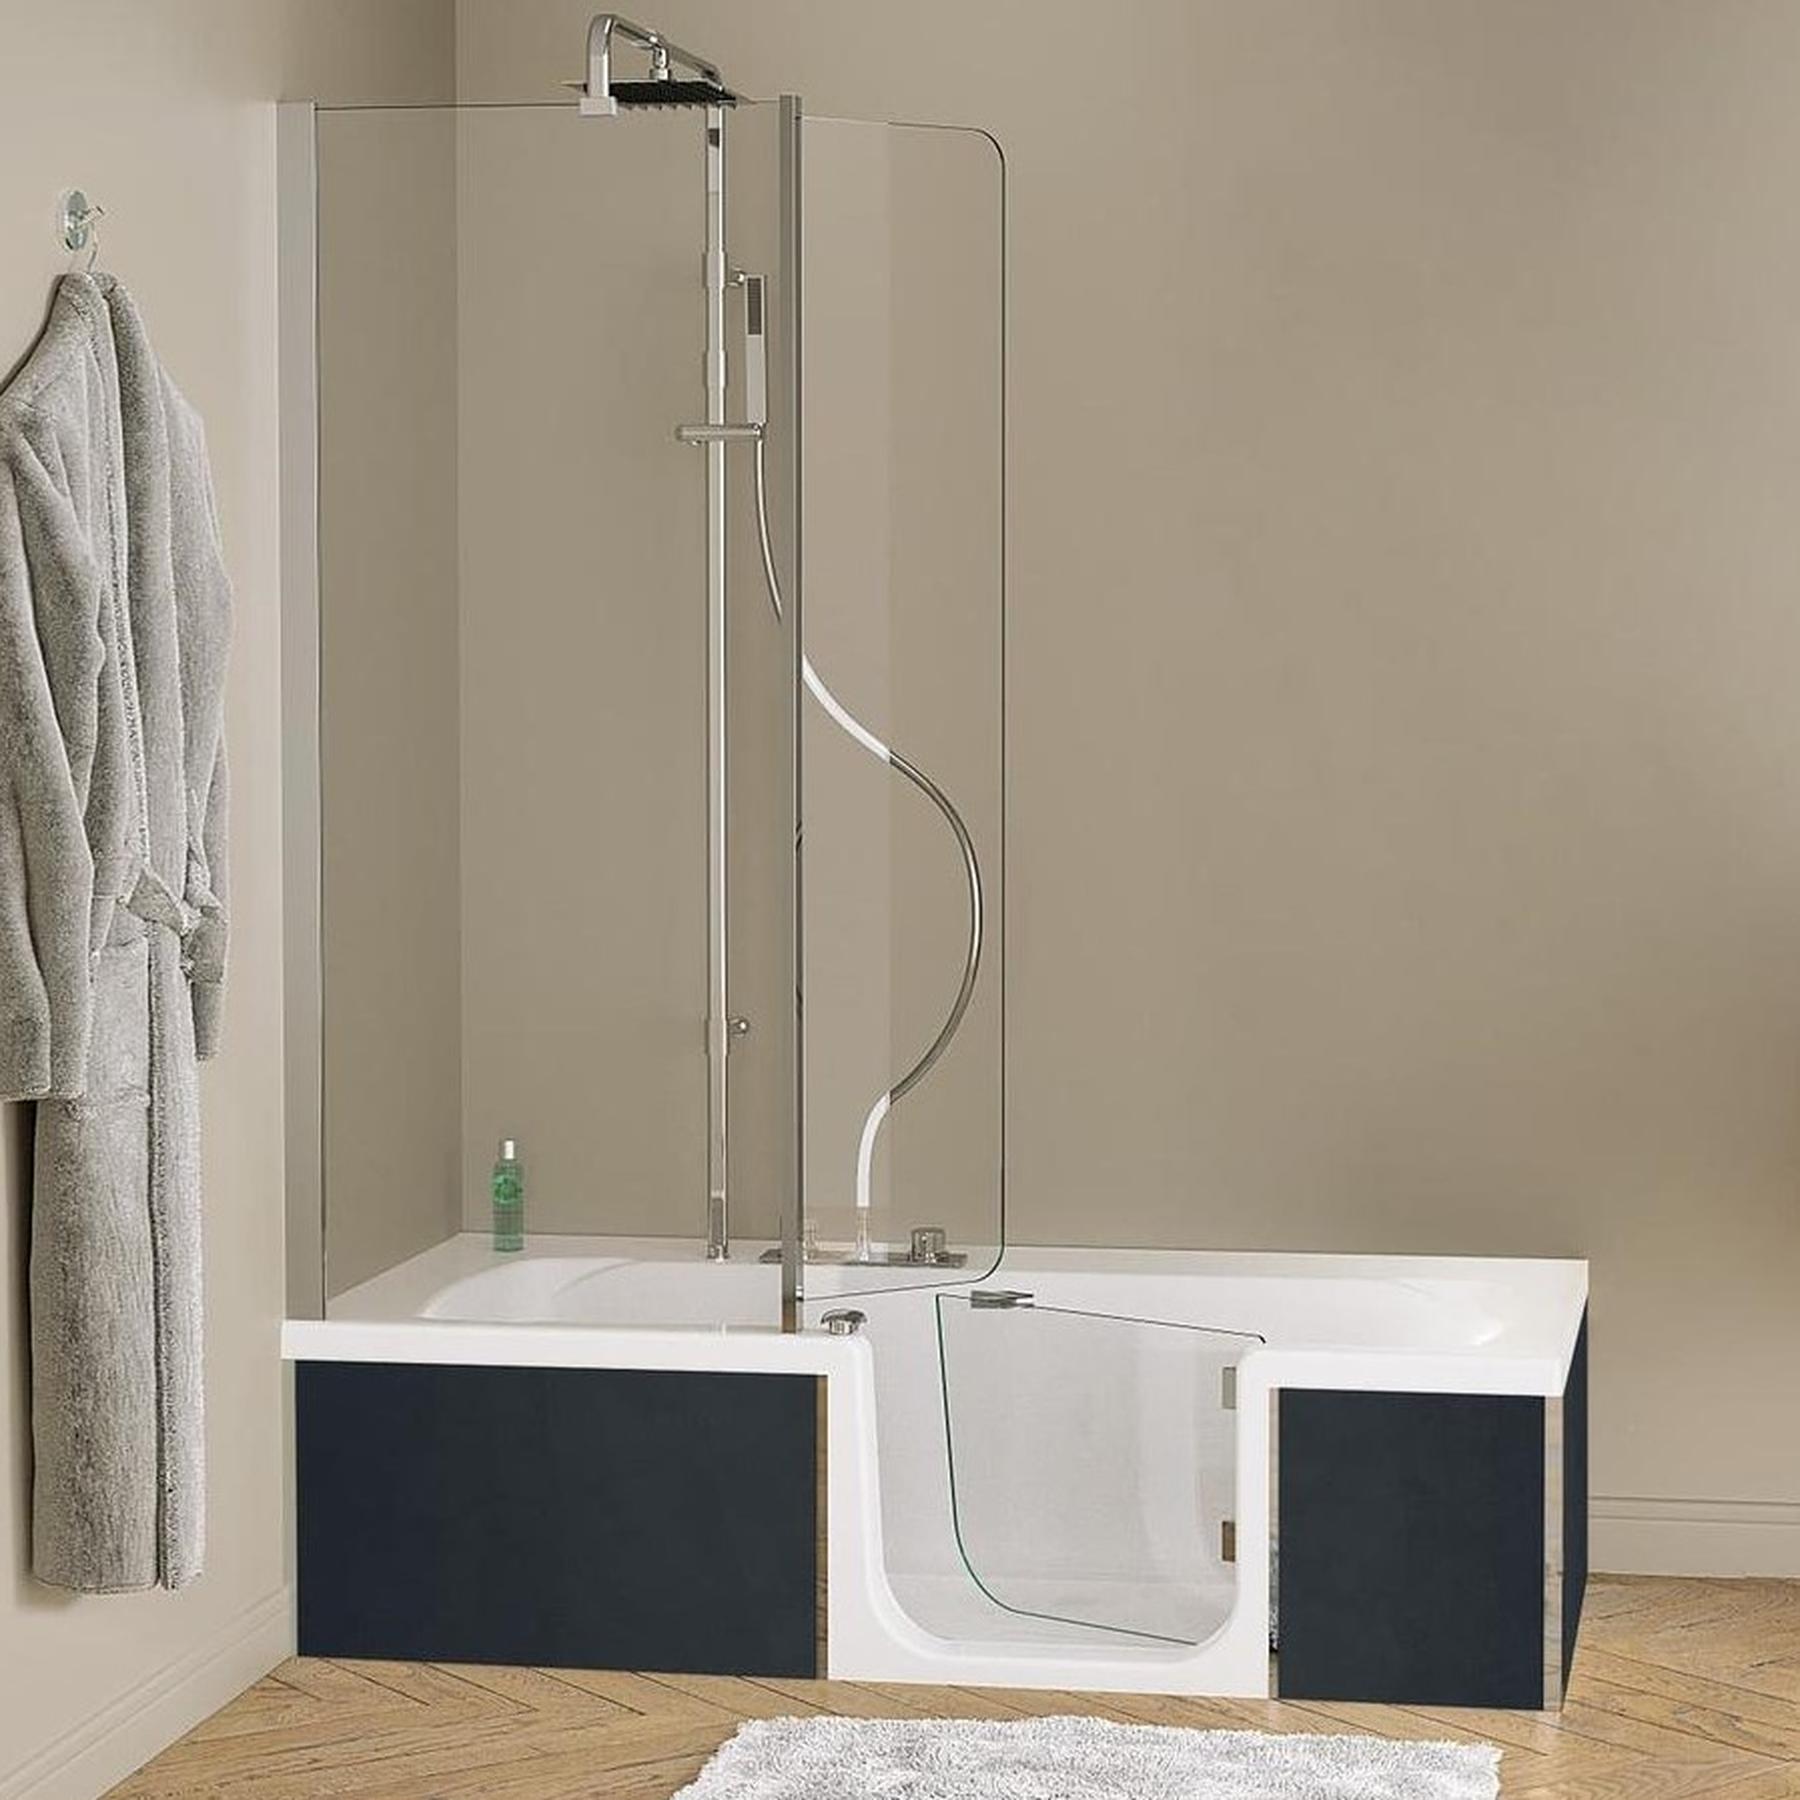 Baignoire à porte PMR DUO Pack Design 2 160x75 pose en niche espace douche à droite tête bain à gauche tablier inclus